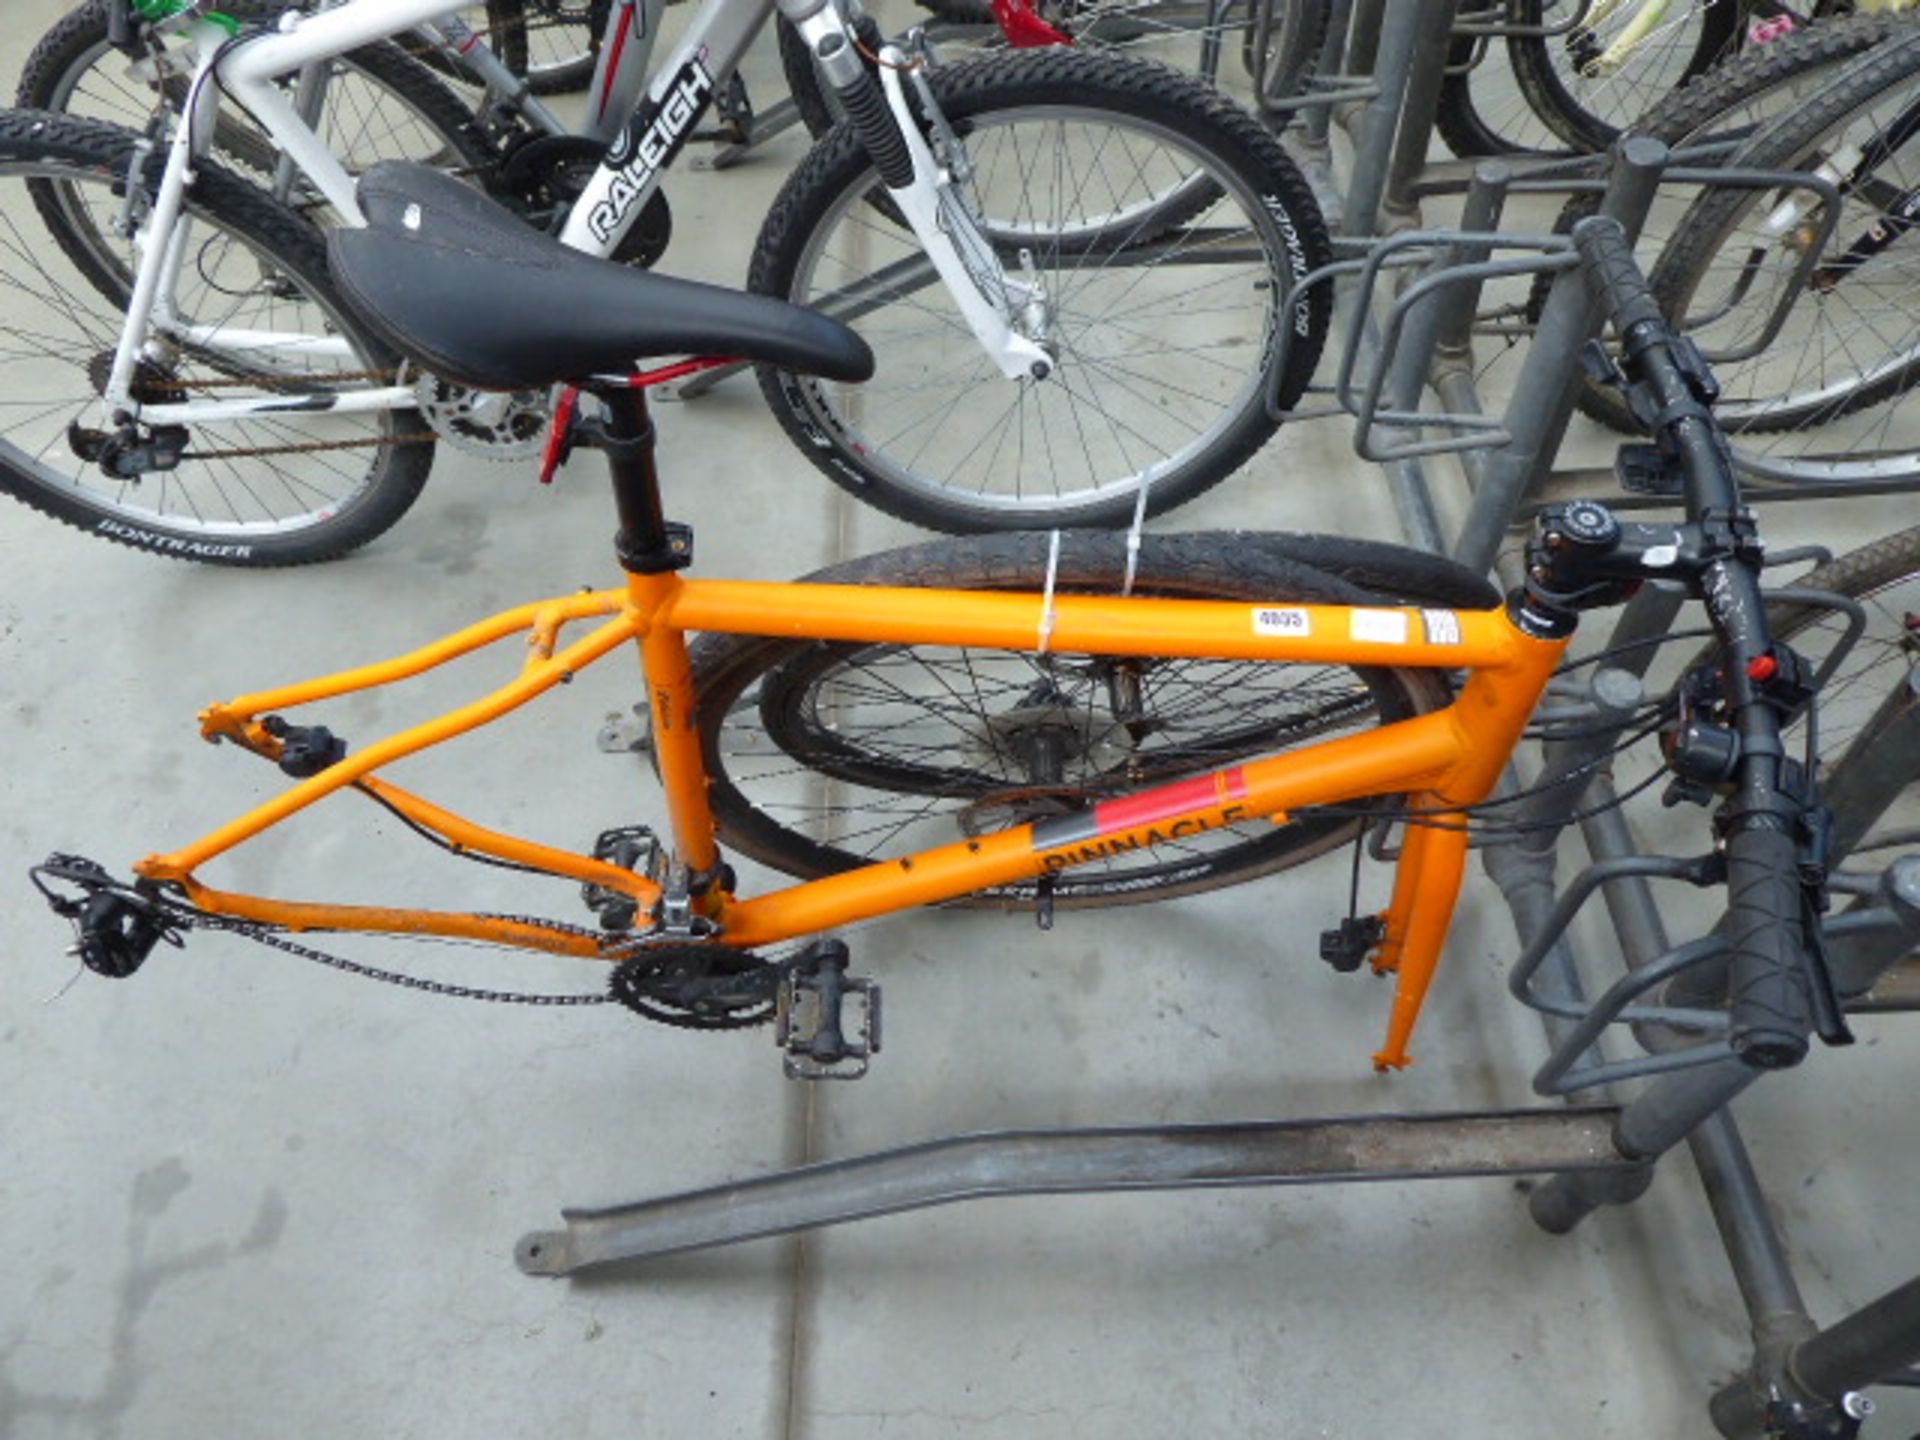 Orange Pinnacle cycle frame with 2 wheels